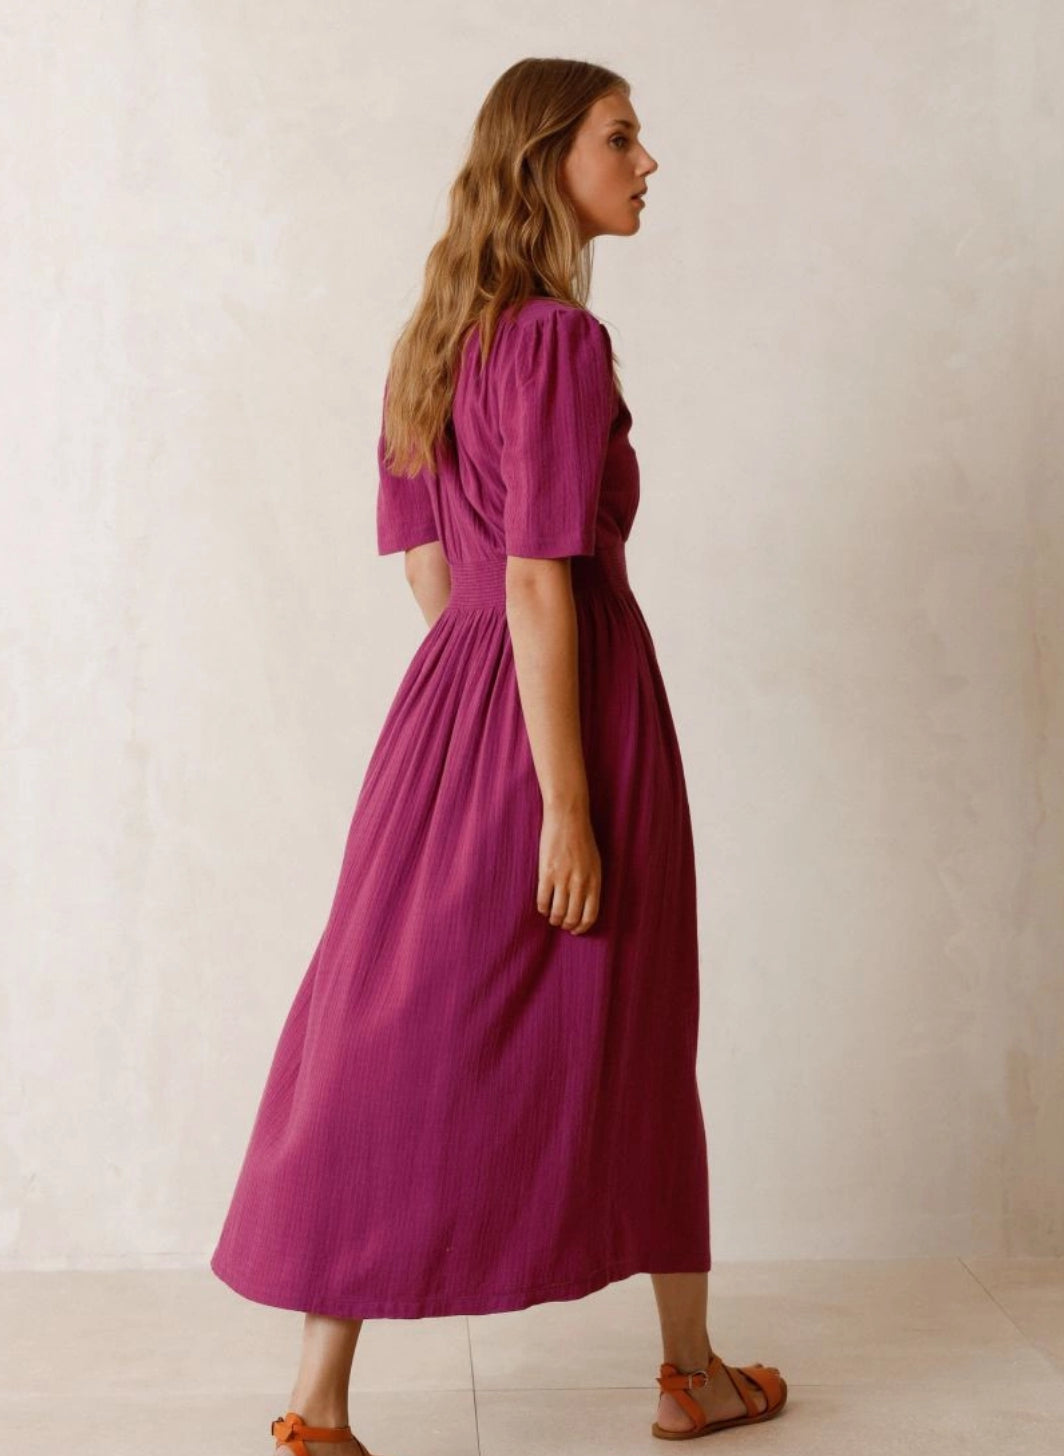 Romantic Violet Dress